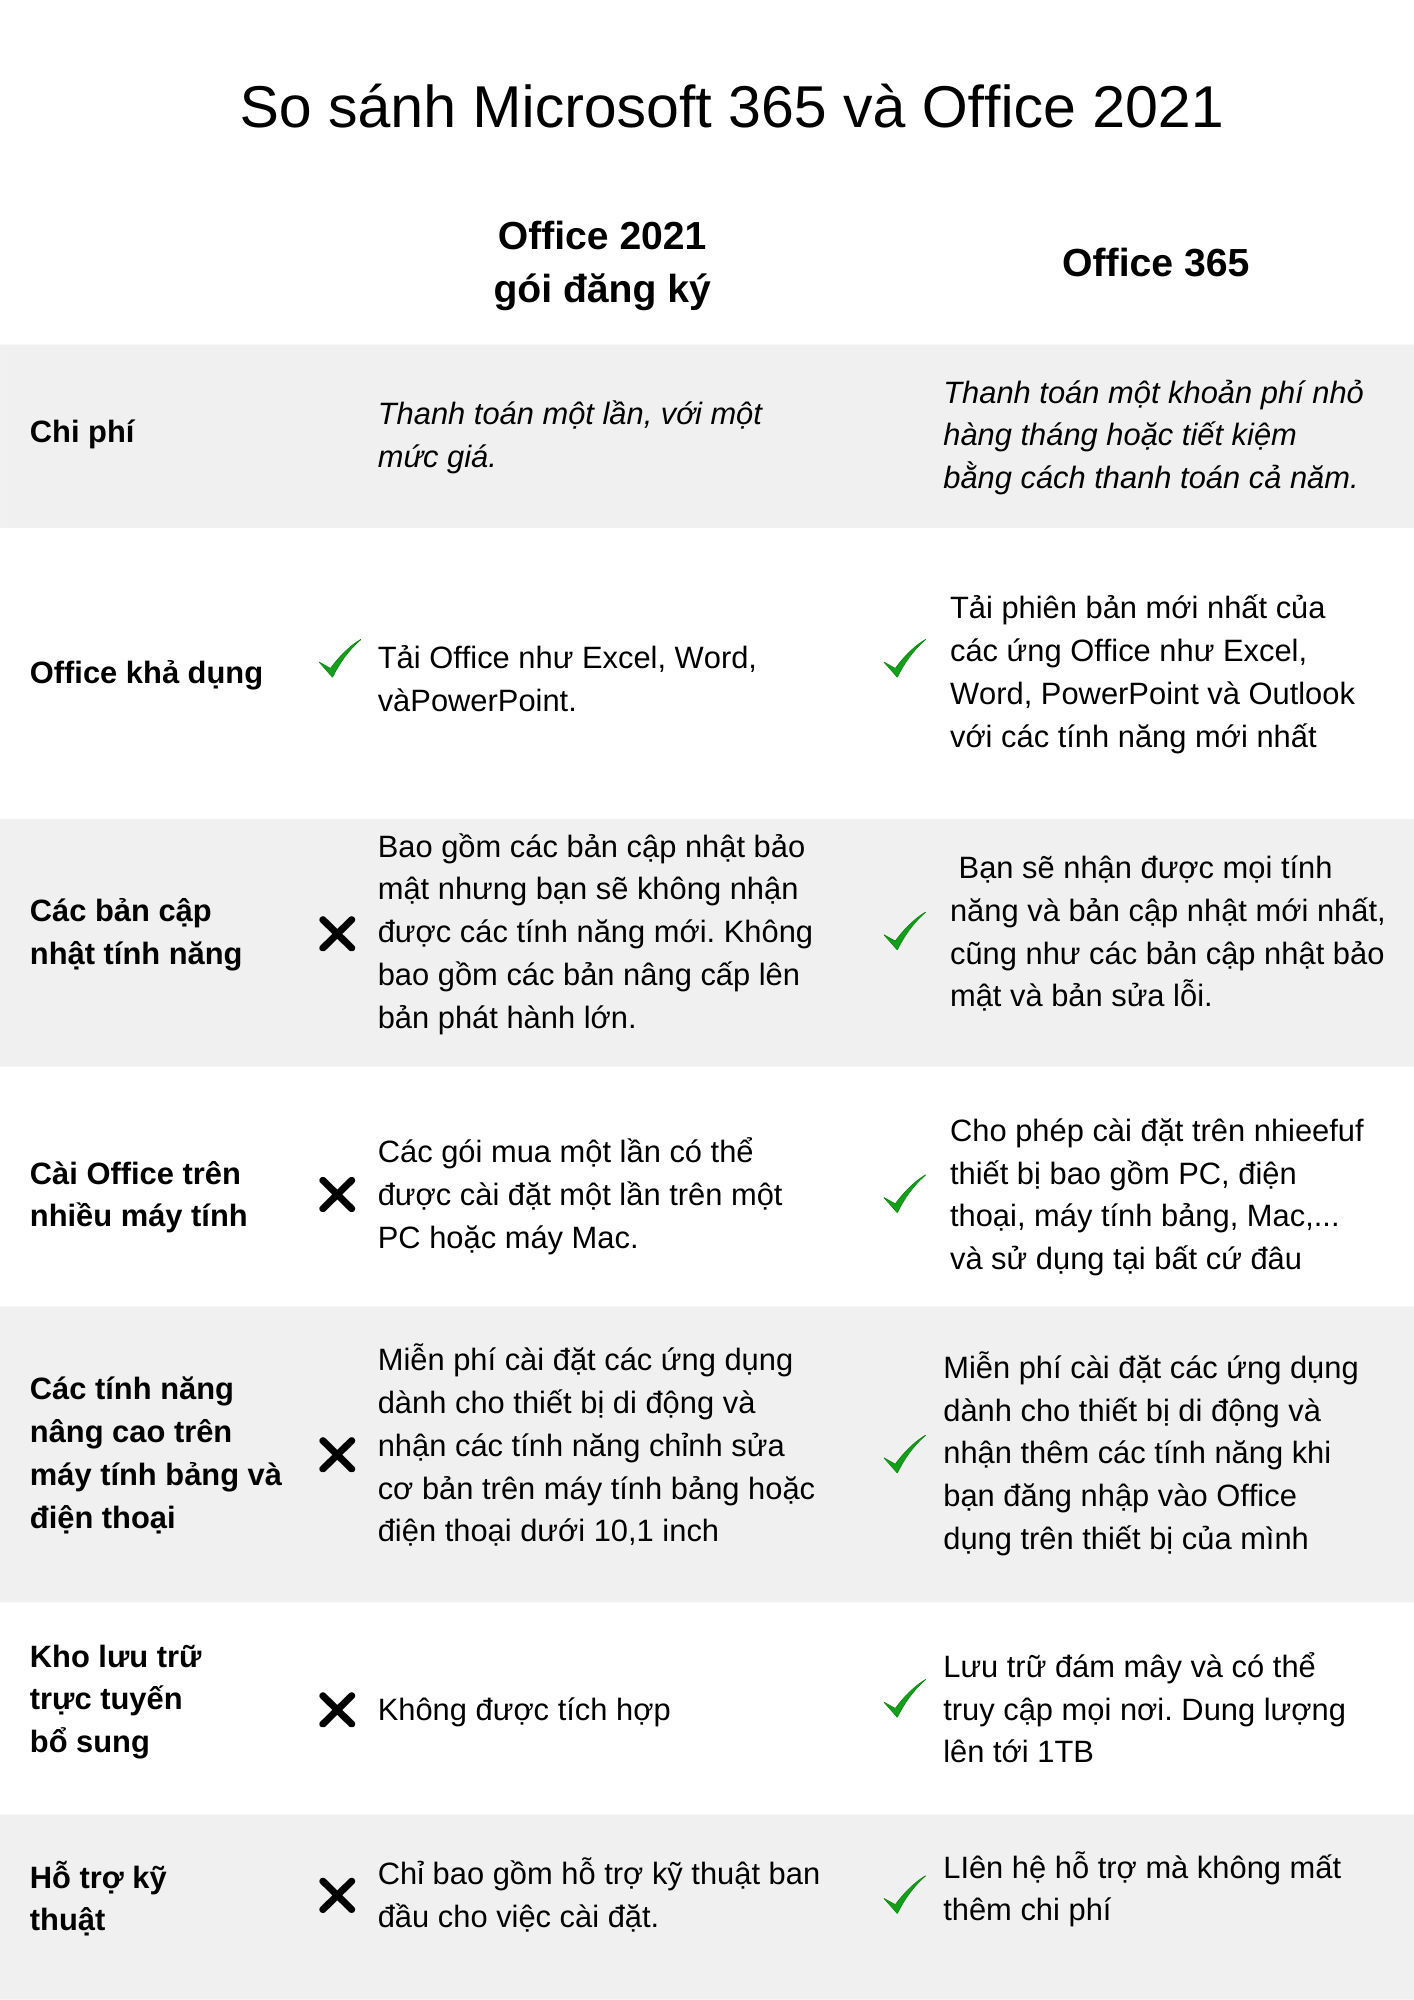 So sánh Office 365 và Office 2021 - Nên dùng bản nào? 2